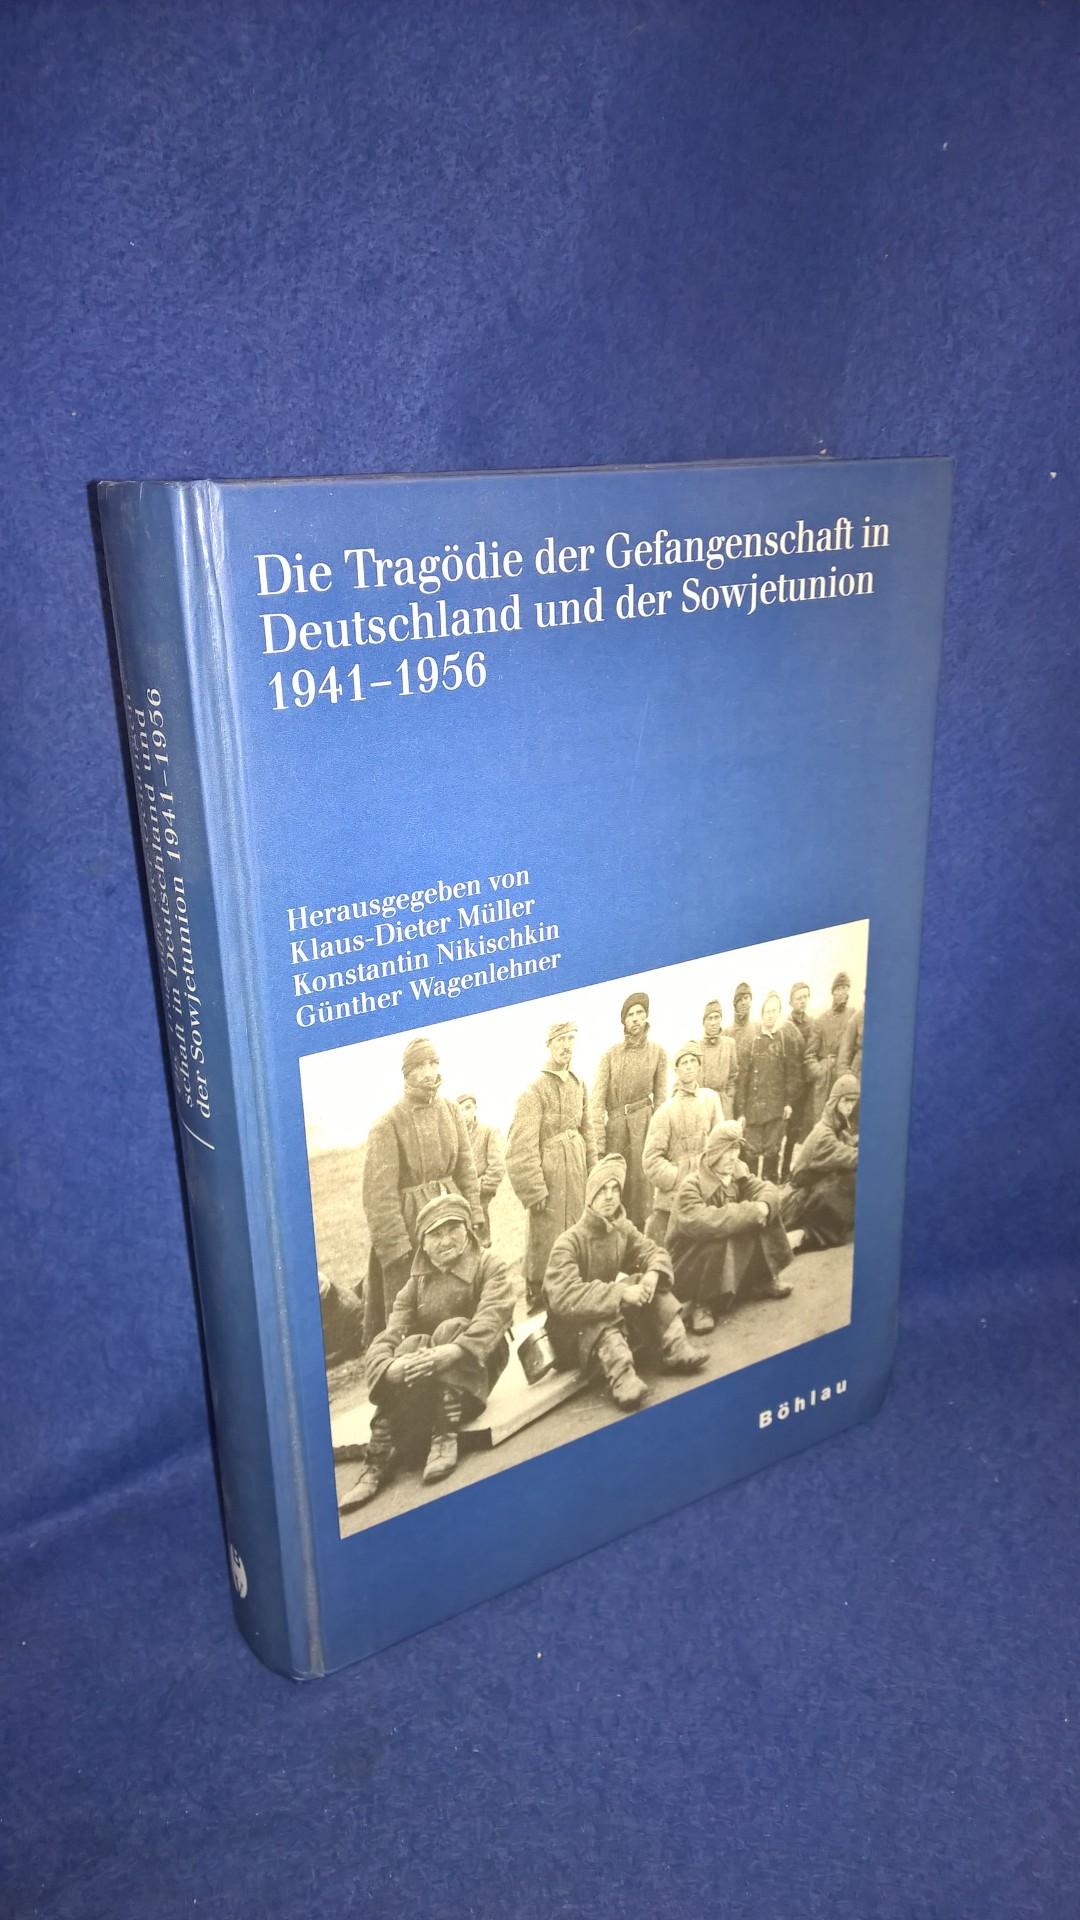 Die Tragödie der Gefangenschaft in Deutschland und der Sowjetunion 1941-1956.